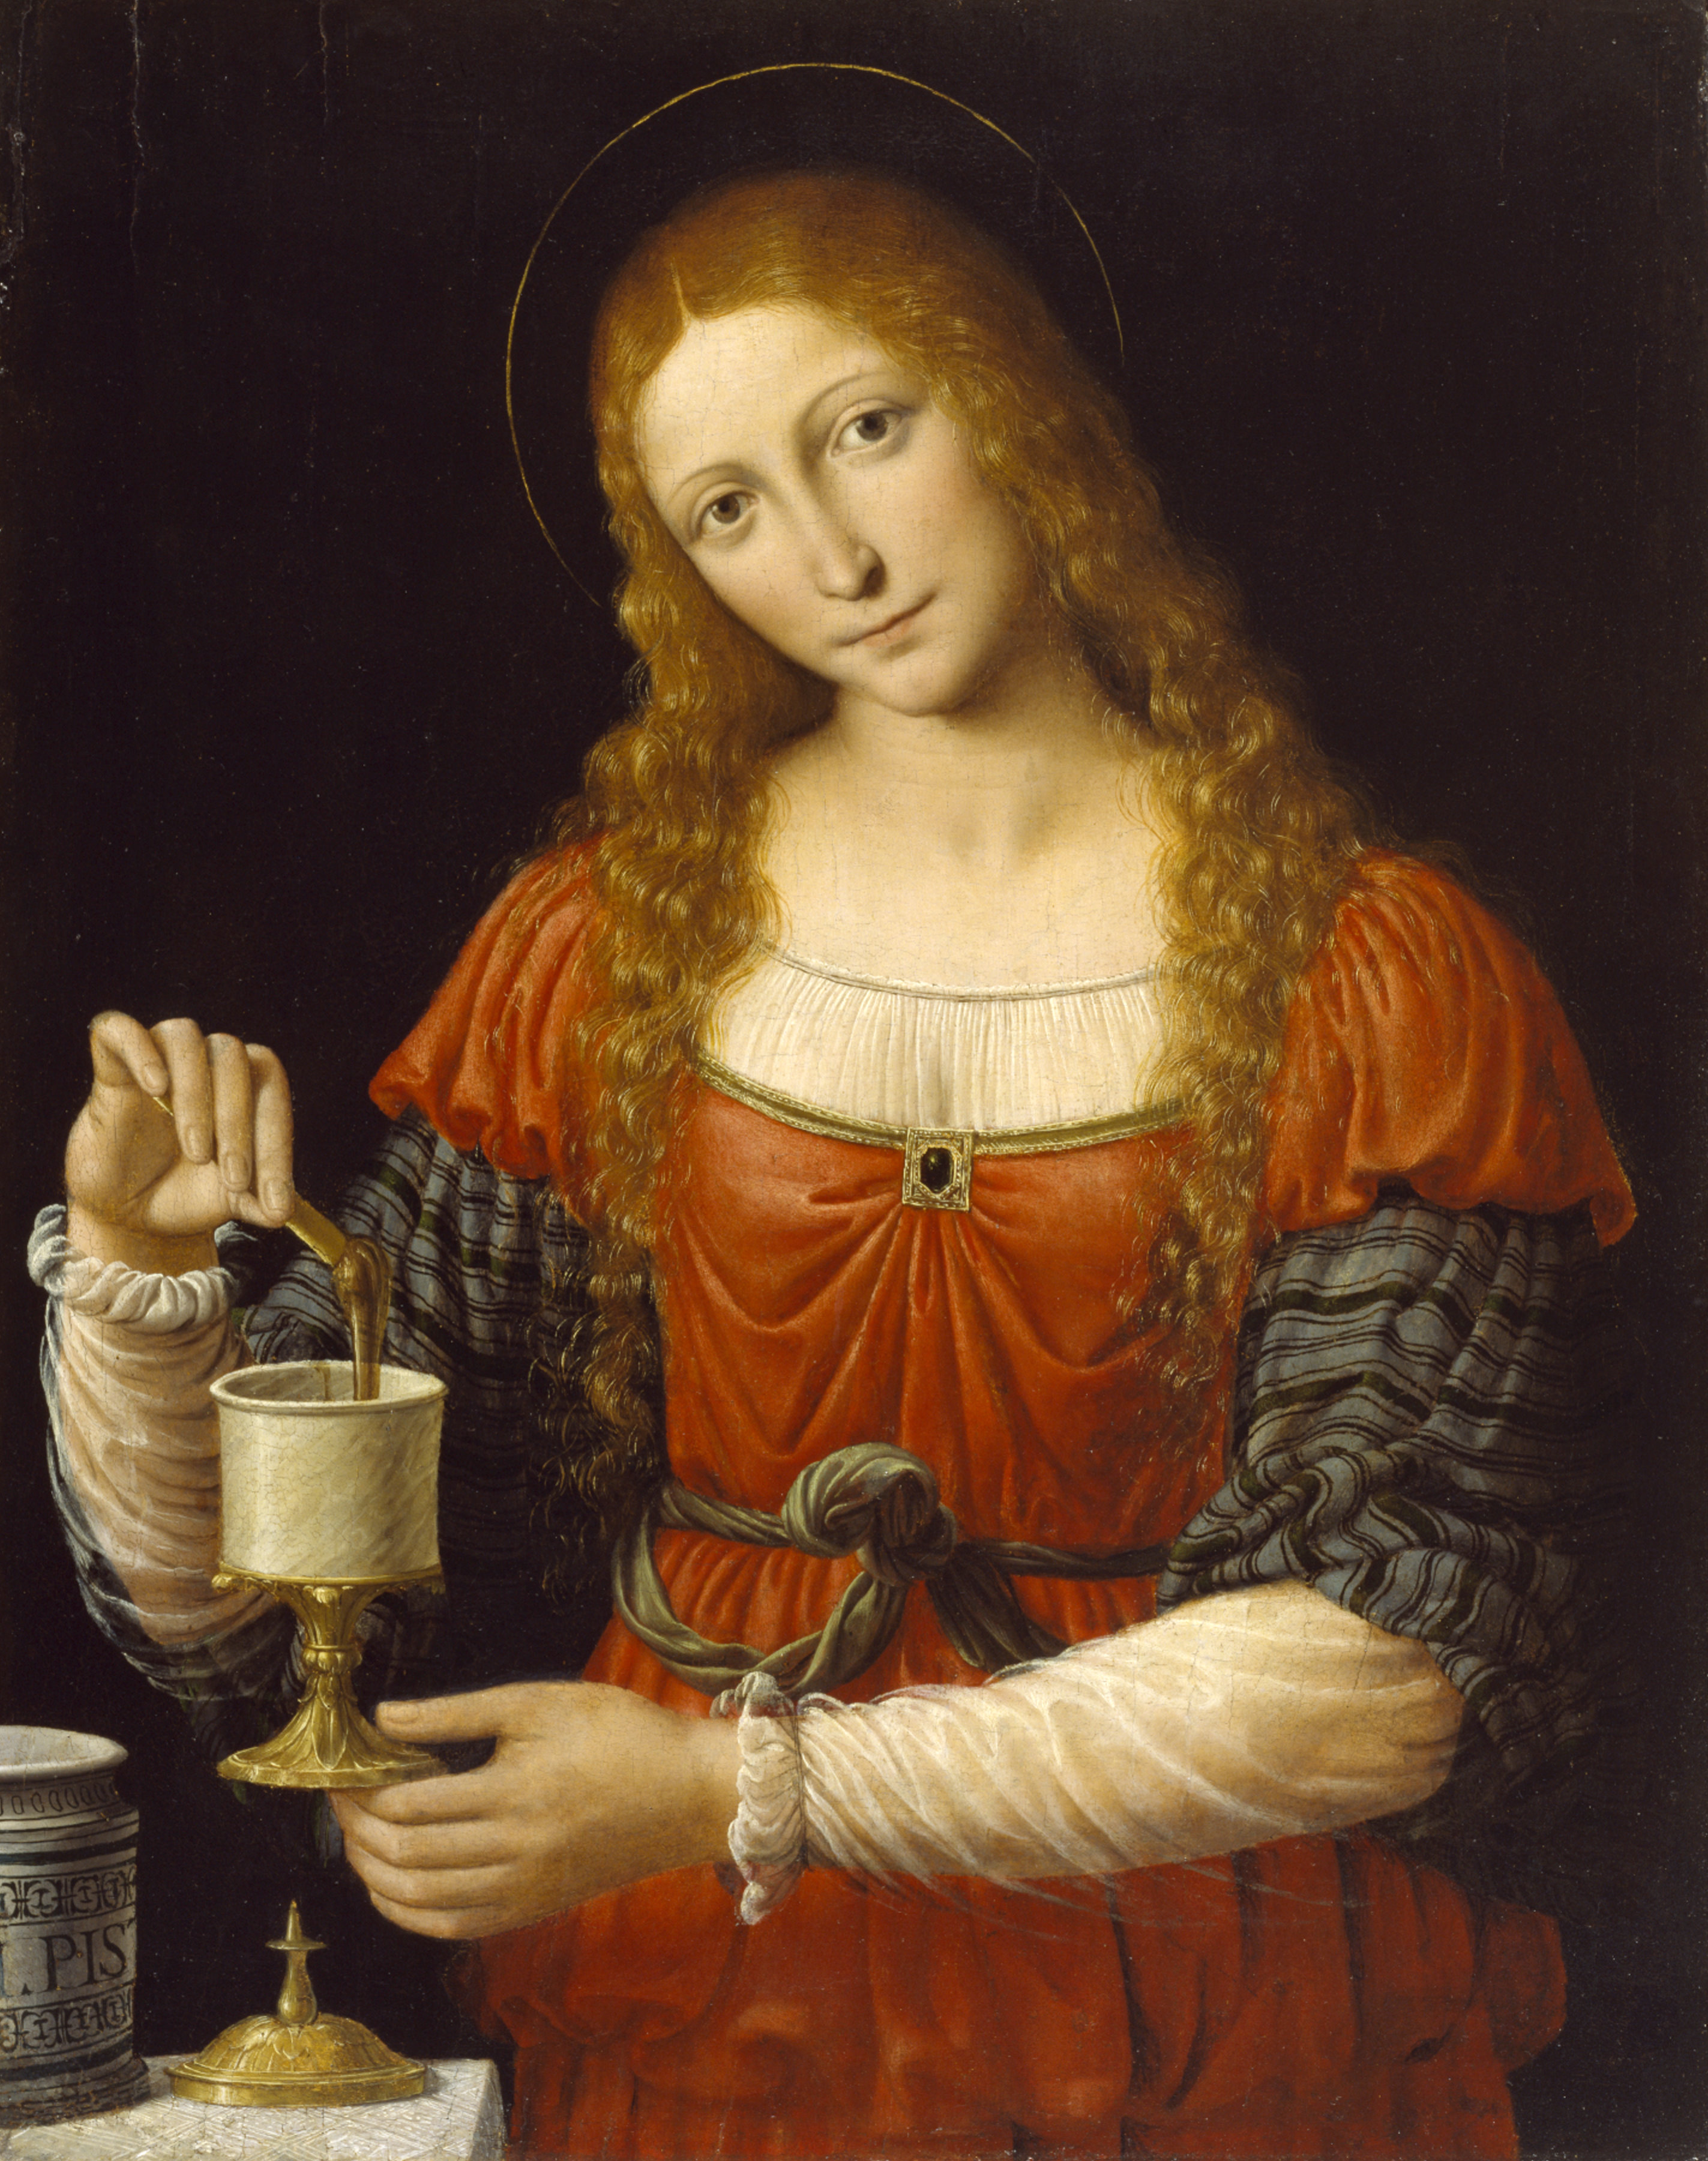 'Mary Magdalene', Andrea Solario and Bernardino Luini (ca. 